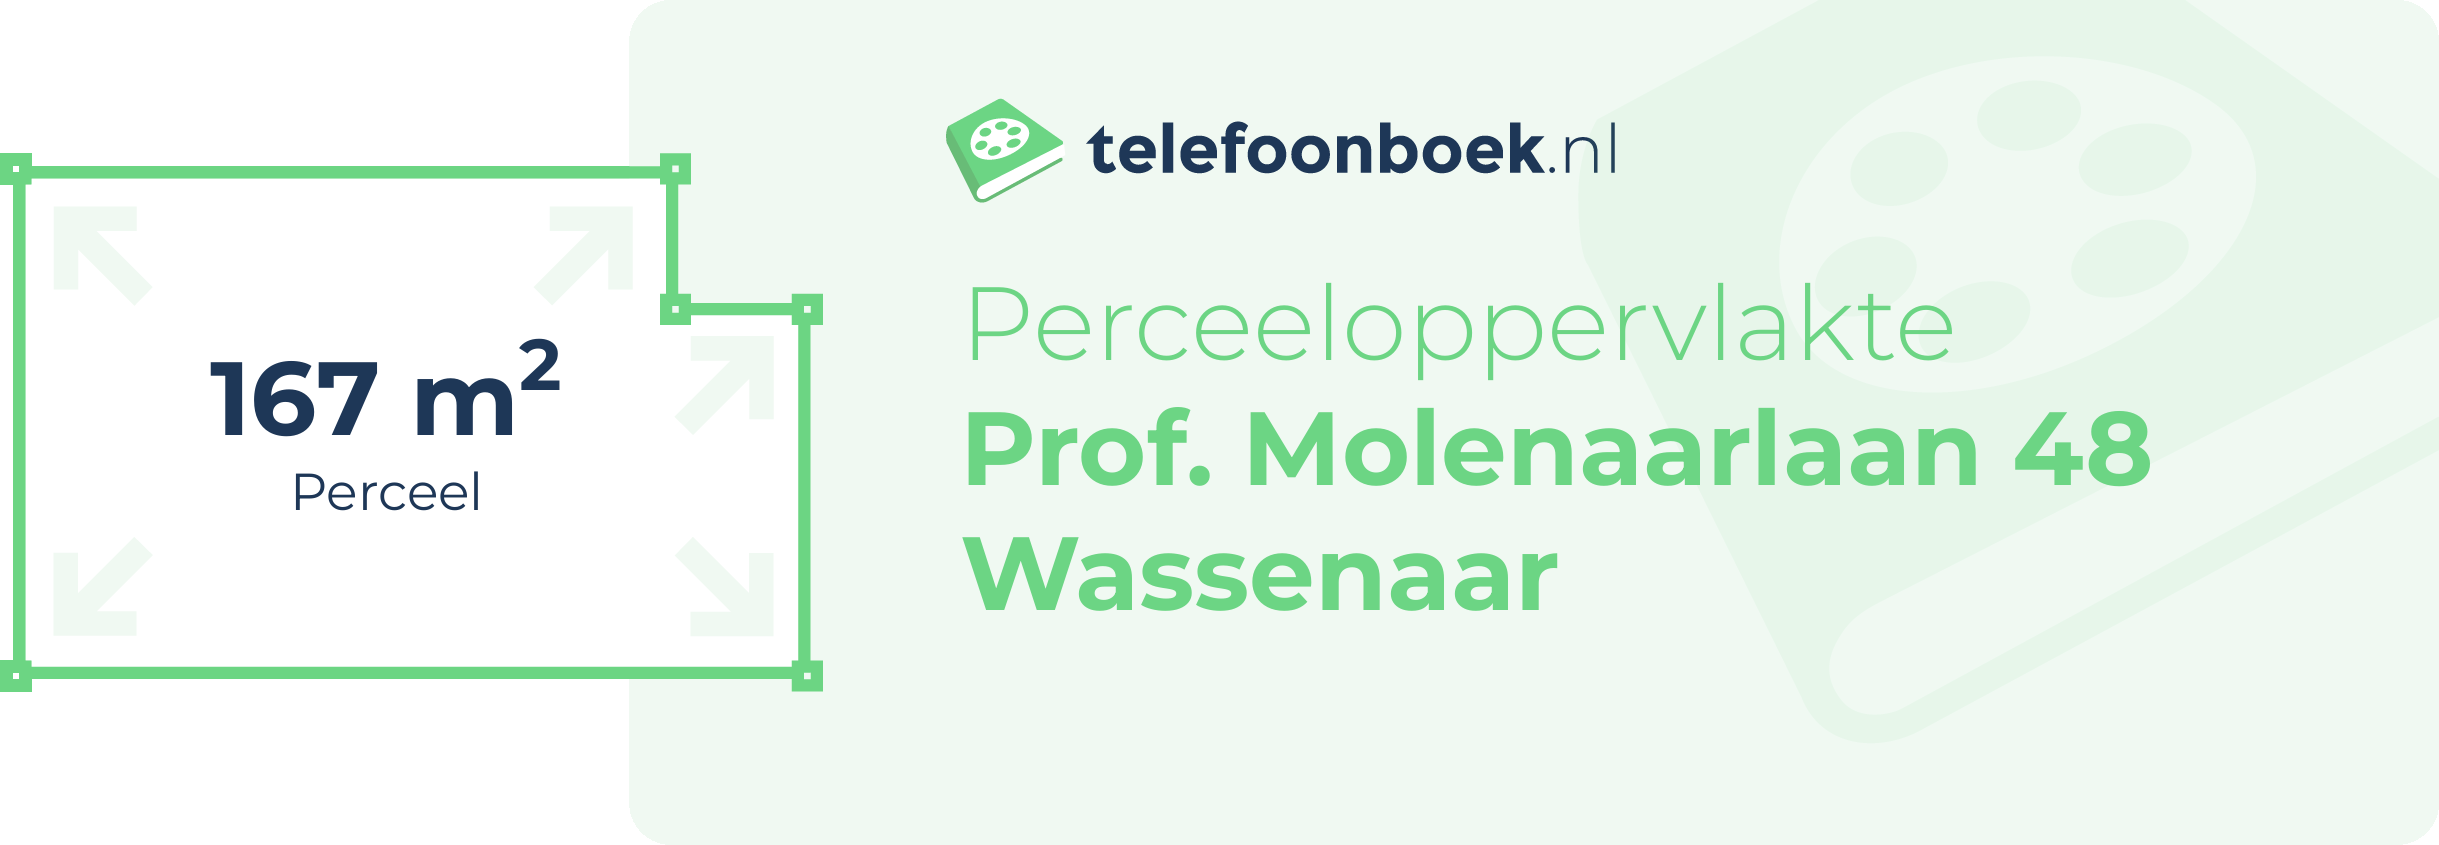 Perceeloppervlakte Prof. Molenaarlaan 48 Wassenaar